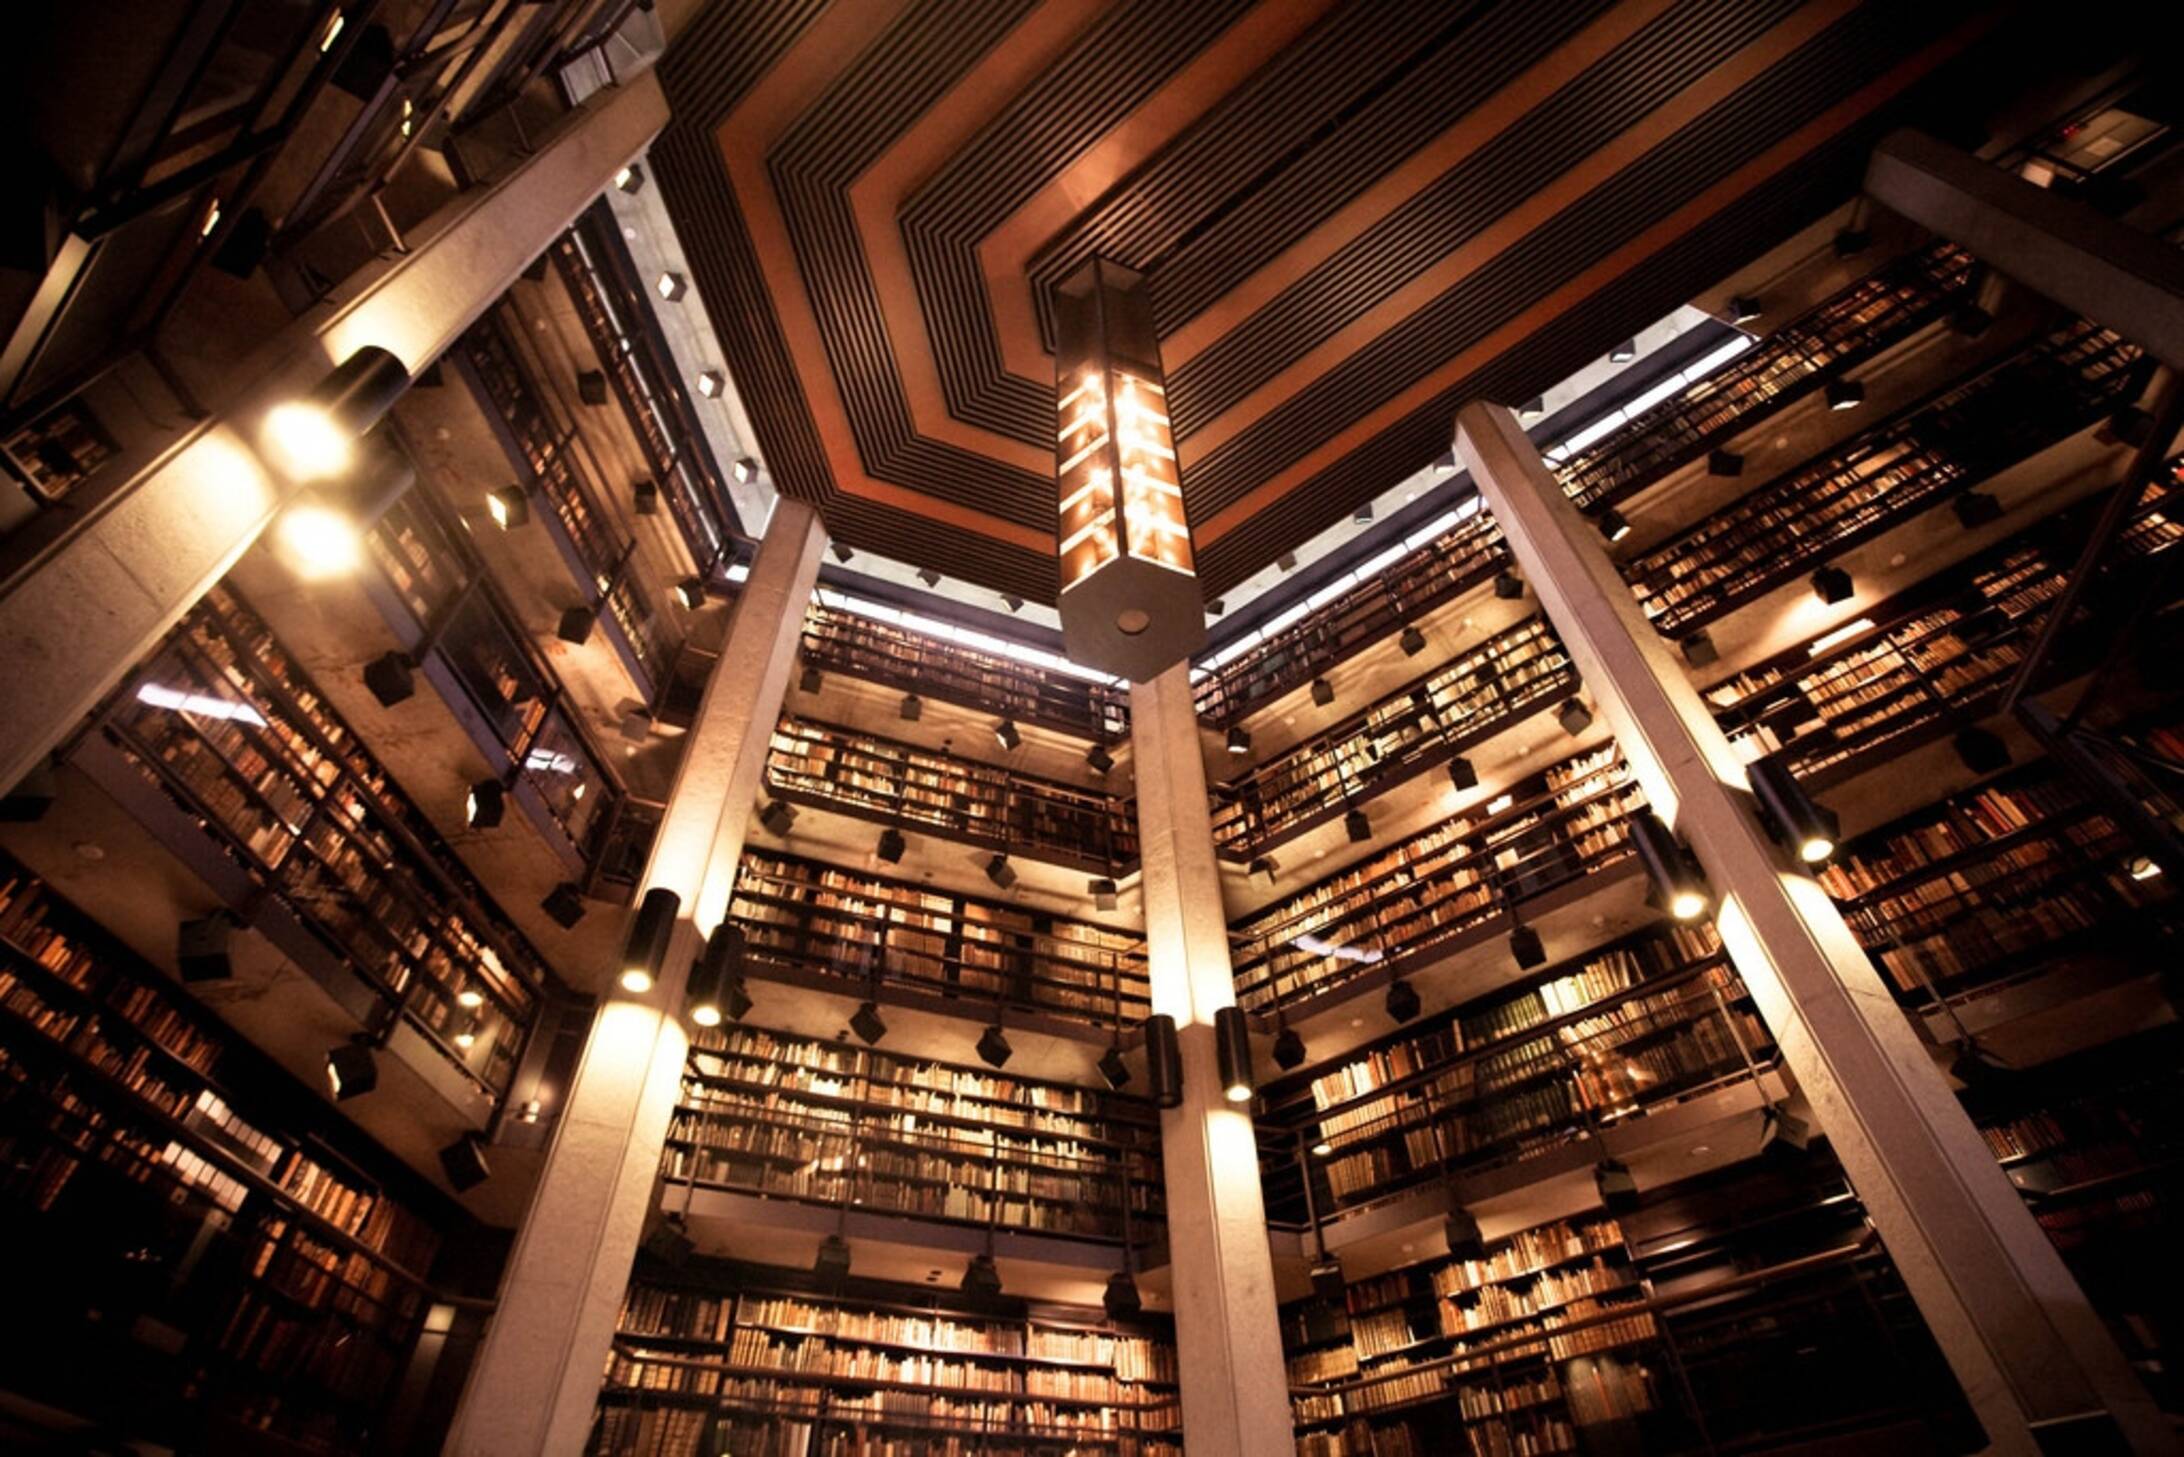 Effects library. Библиотека университета Торонто. Йельский университет библиотека. Brian Kravitz библиотека. Библиотека Фишера (Fisher Library) в сиднейском университете.